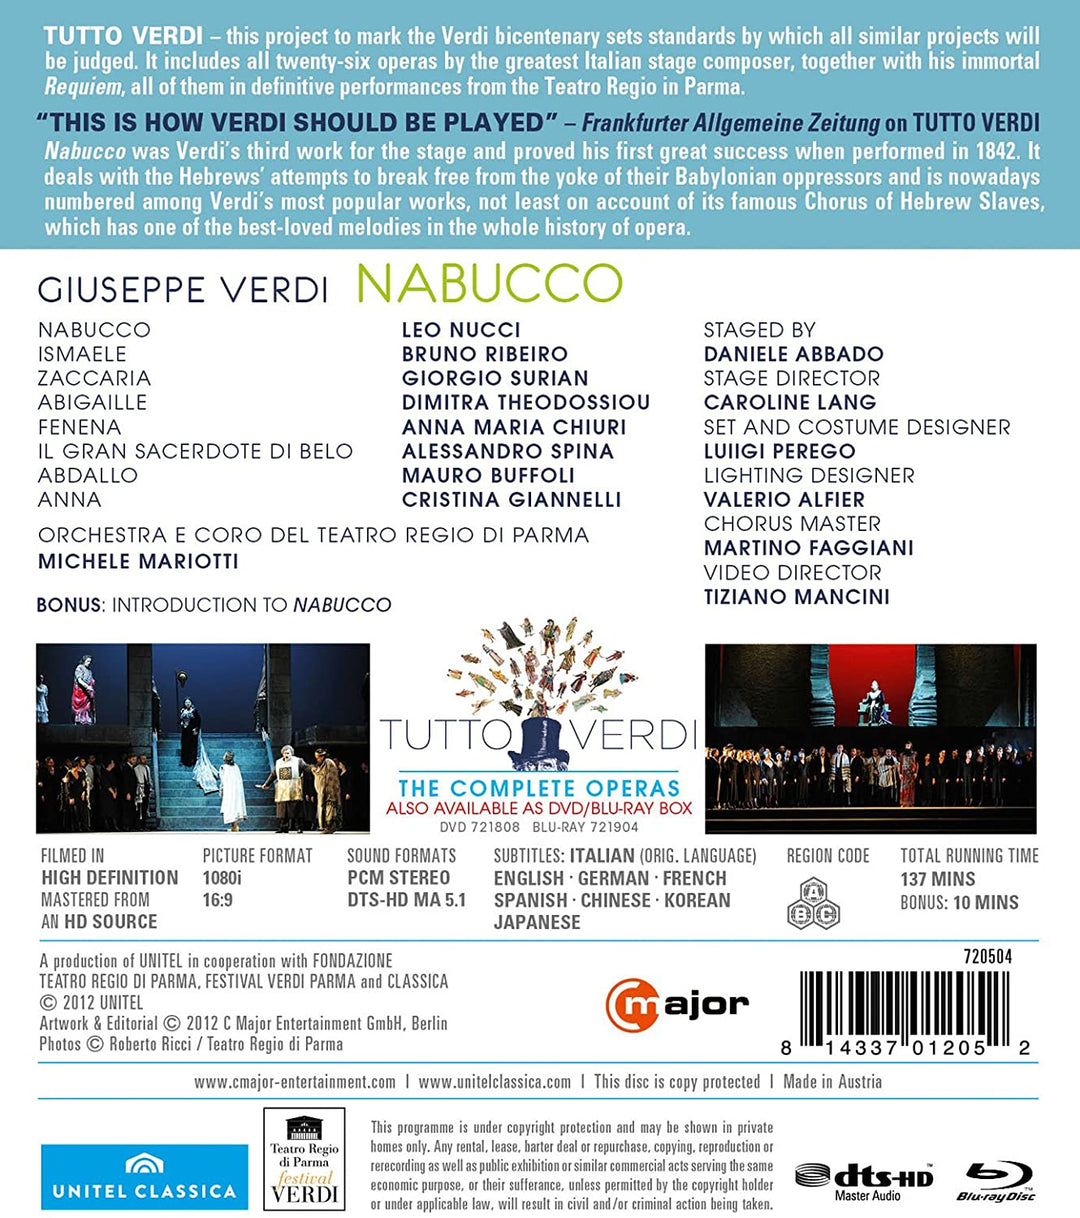 Verdi: Nabucco (Abbado 2009) (Nucci/ Ribeiro/ Surian/ Theodossiou/ Chiuri/ Orchestra e Coro del Teatro Regio di Parma/ Michele Mariotti/ Daniele Abbado) (C Major: 720504) [2012] - dRAMA [DVD]